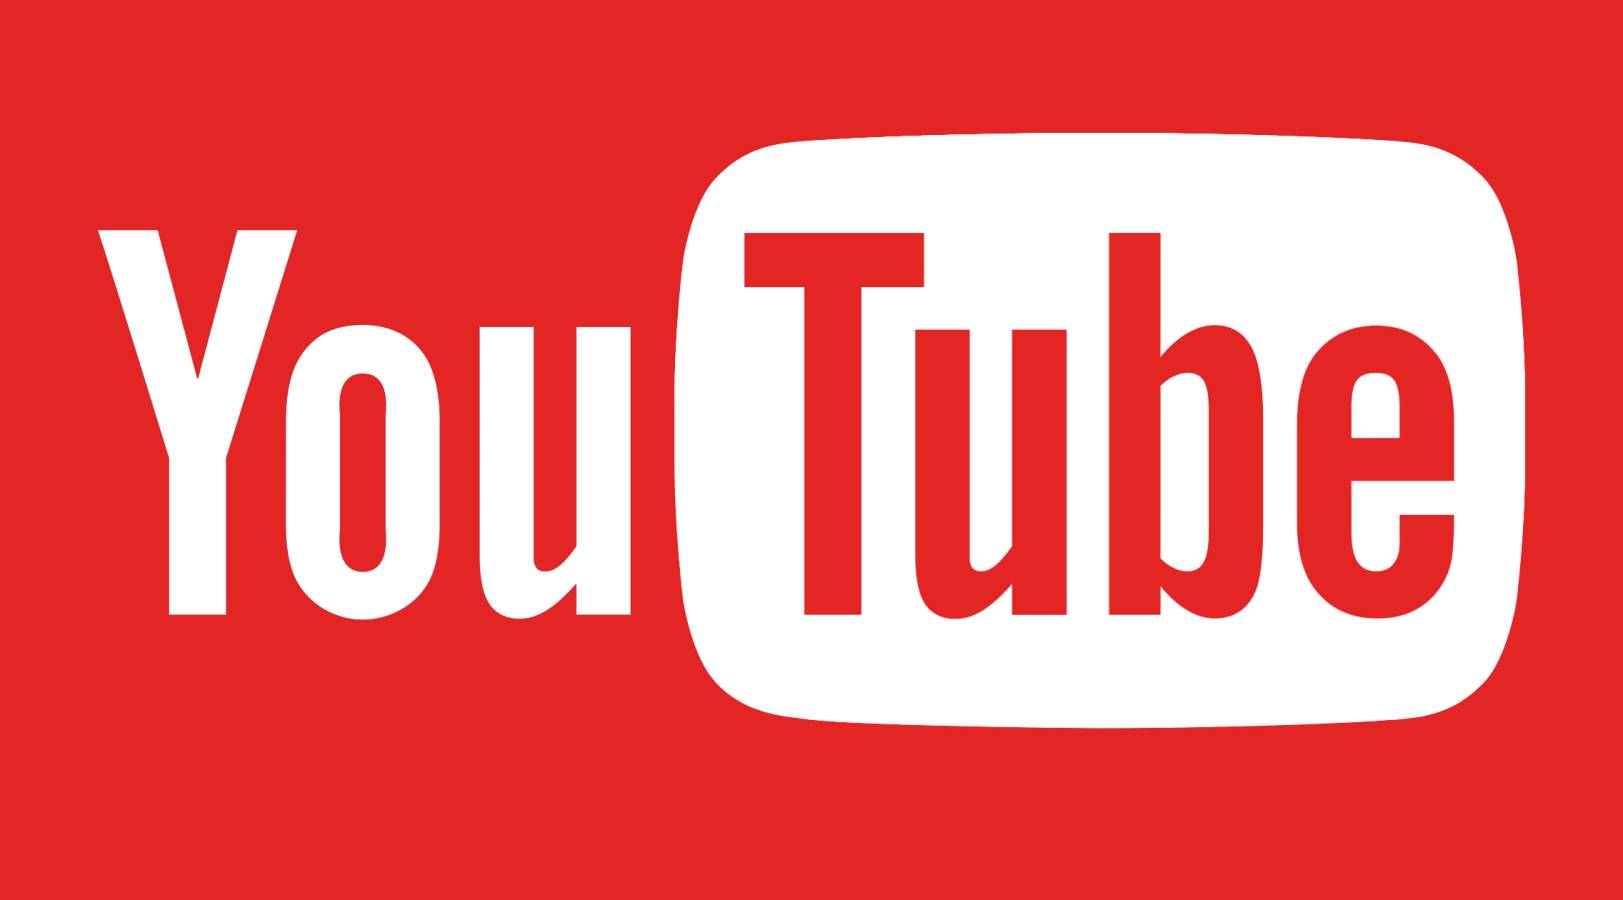 YouTube Hvilken ny opdatering blev lanceret til telefoner og tablets